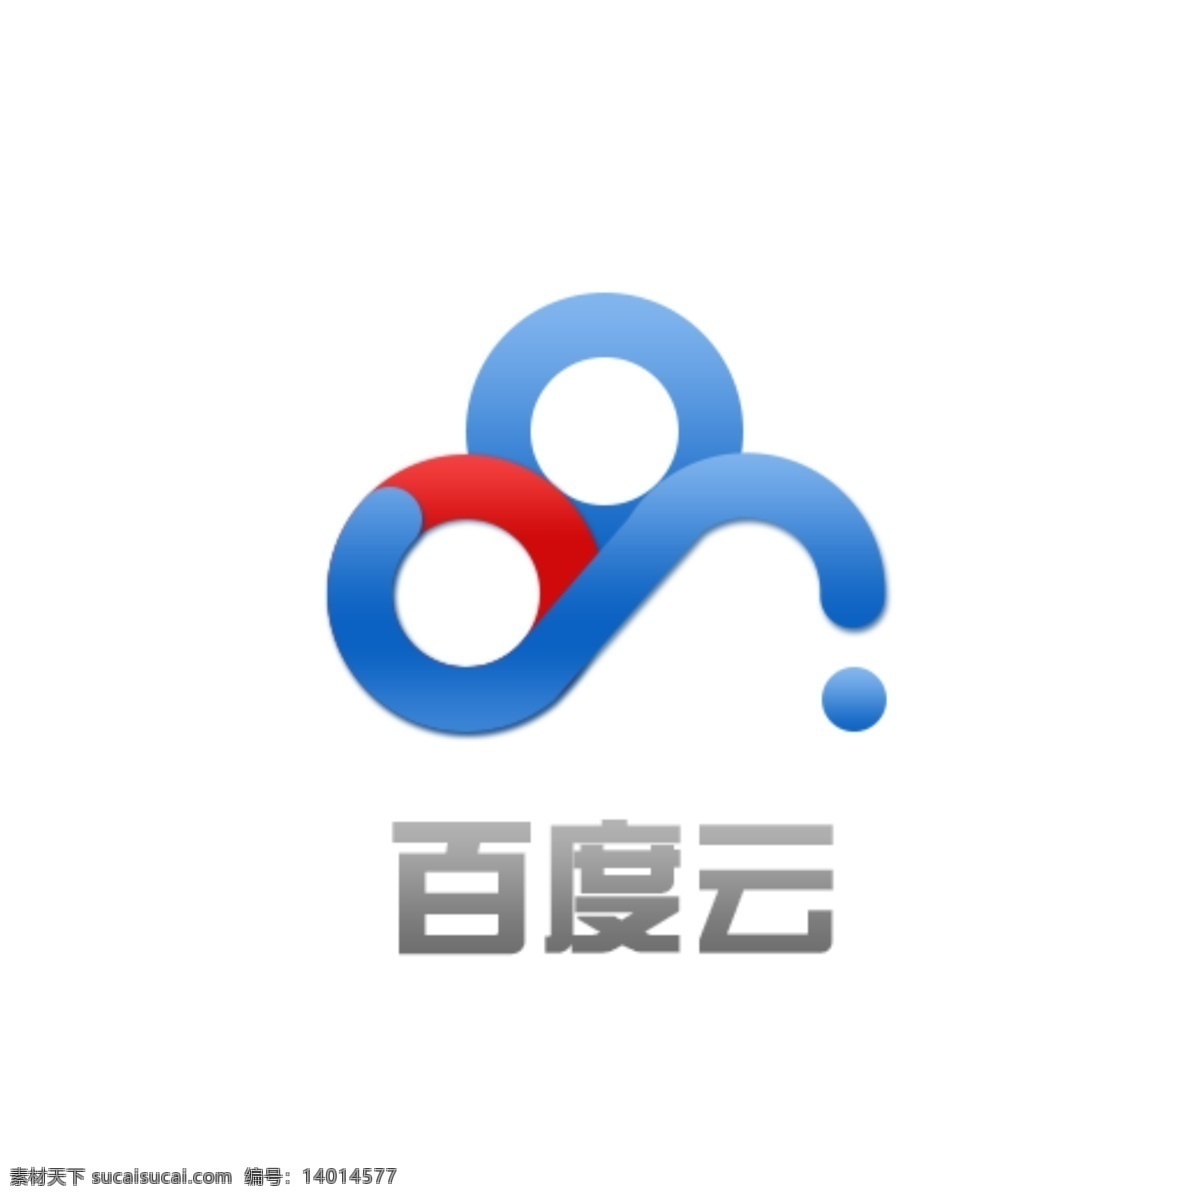 百度 云 百度logo logo psd源文件 logo设计